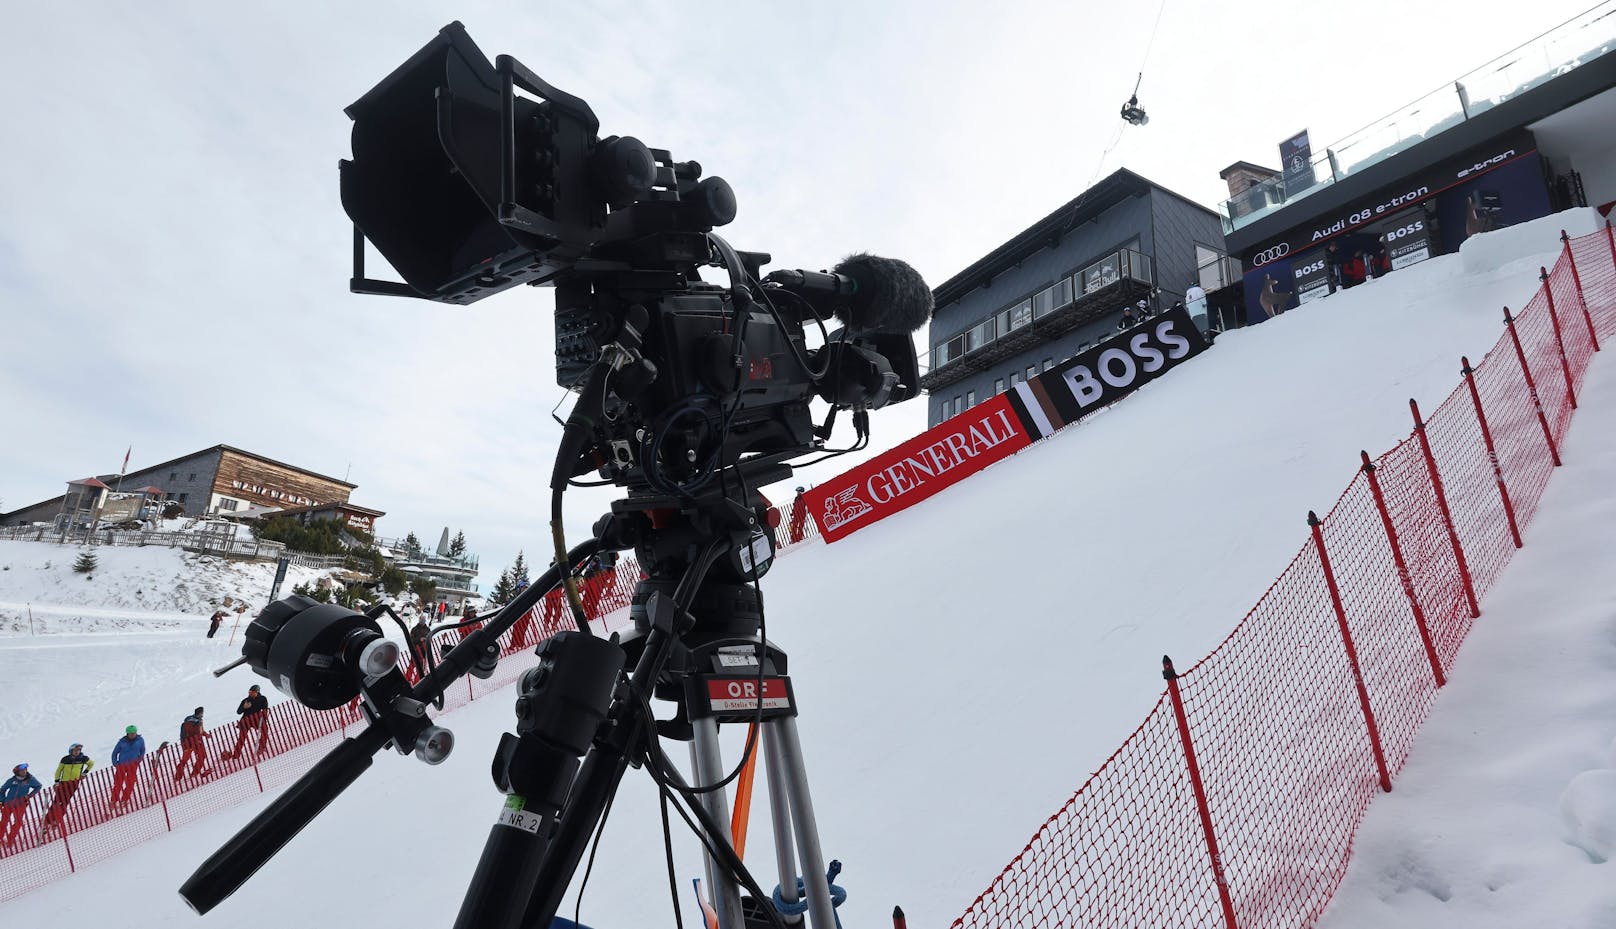 Während des Kitzbühel-Wochenendes übertragen 45 TV-Stationen aus der ganzen Welt die Rennen. 30 Radiosender sind vor Ort. 262 Millionen Menschen verfolgen die insgesamt 55 Stunden Berichterstattung. Das sorgt für einen hohen Werbewert.